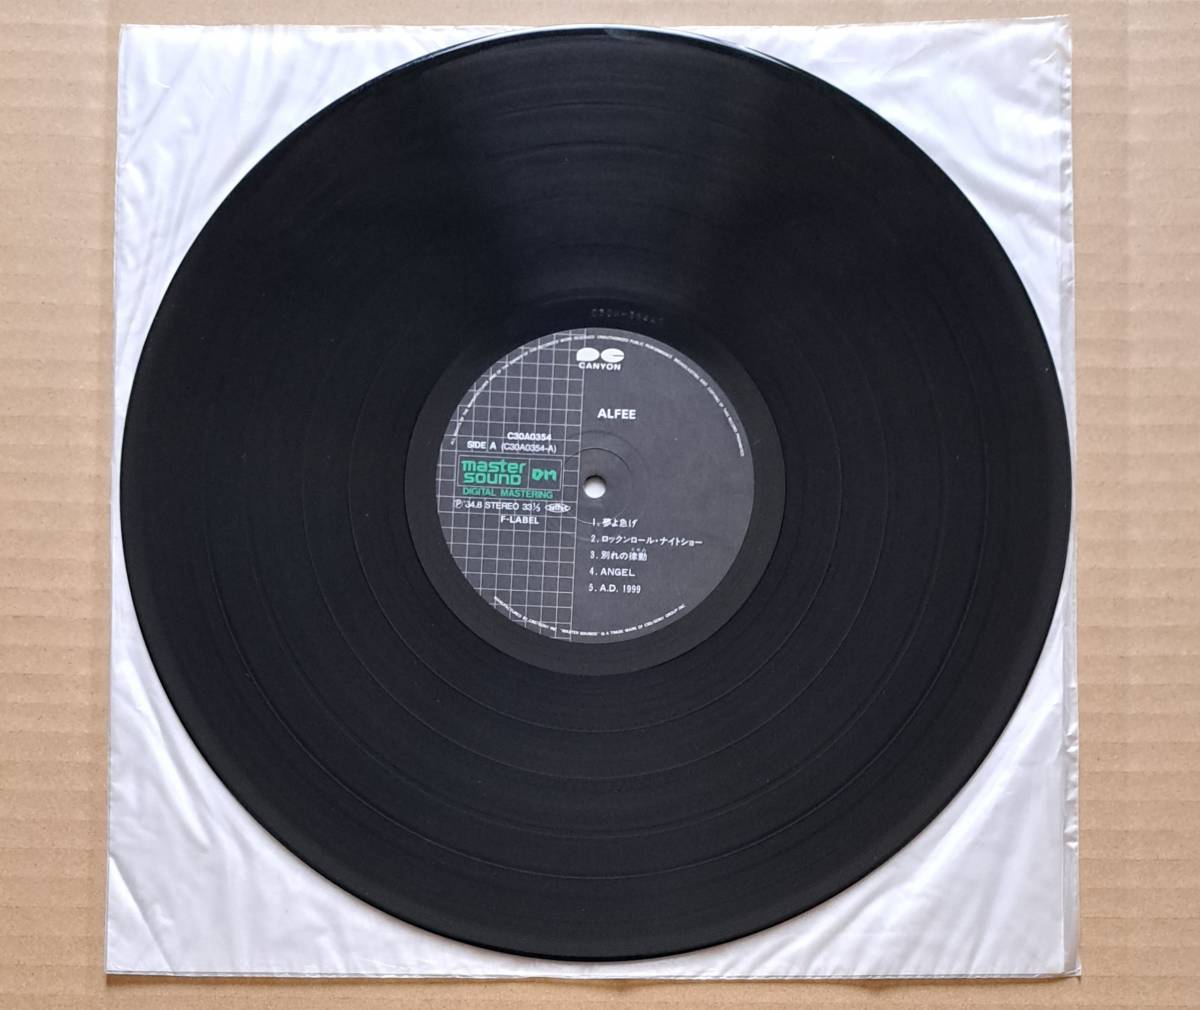 ピンナップ2枚付※1枚欠品 MASTER SOUND 高音質盤・良盤帯付LP◎アルフィー『THE ALFEE』C30A0354 キャニオンレコード F-LABEL 1984年_画像4